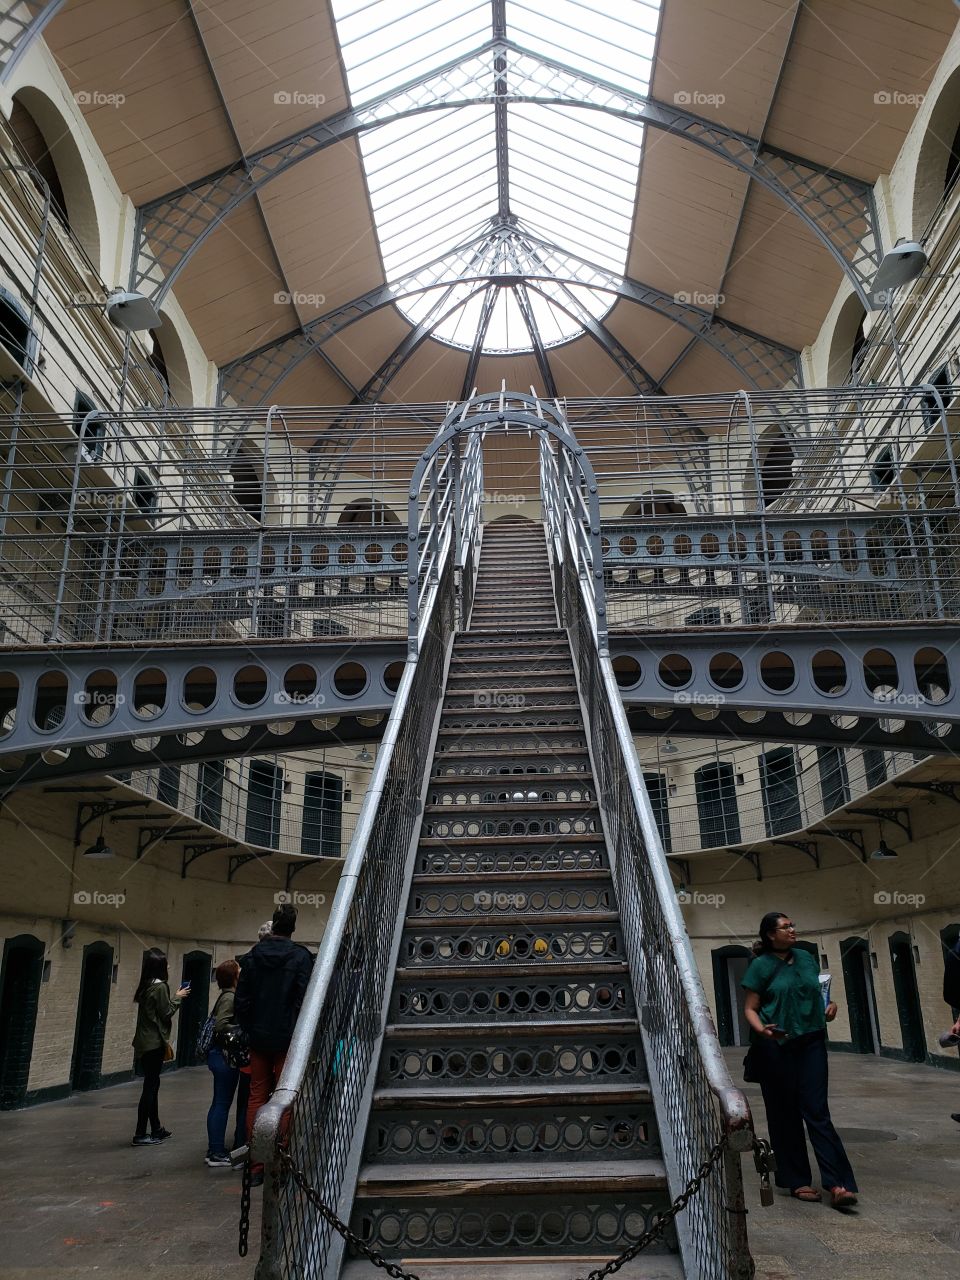 Kilmainham Gaol, Jail, Architecture Walkway and stairway Dublin Ireland